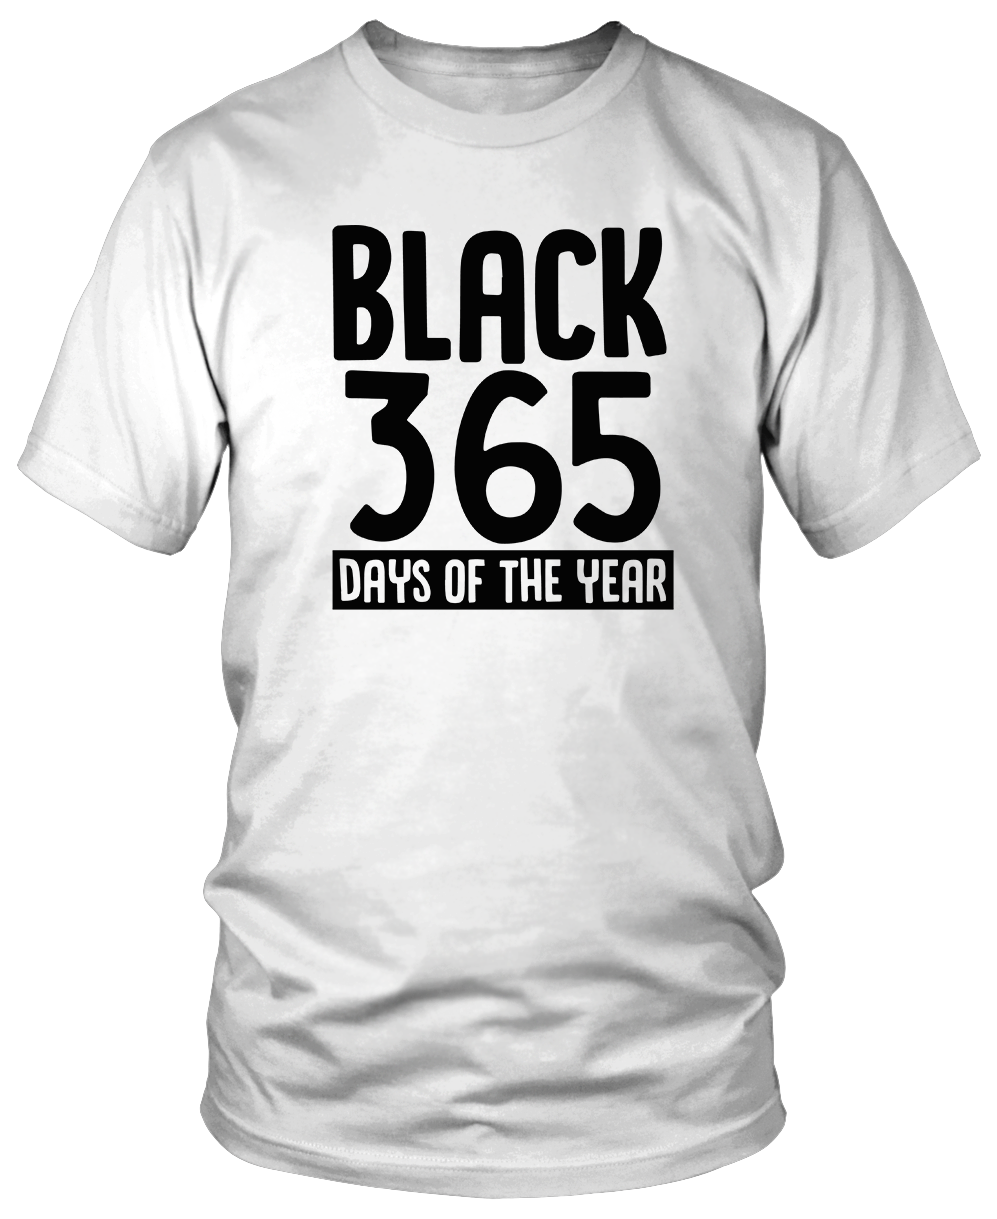 BLACK 365 T-Shirt